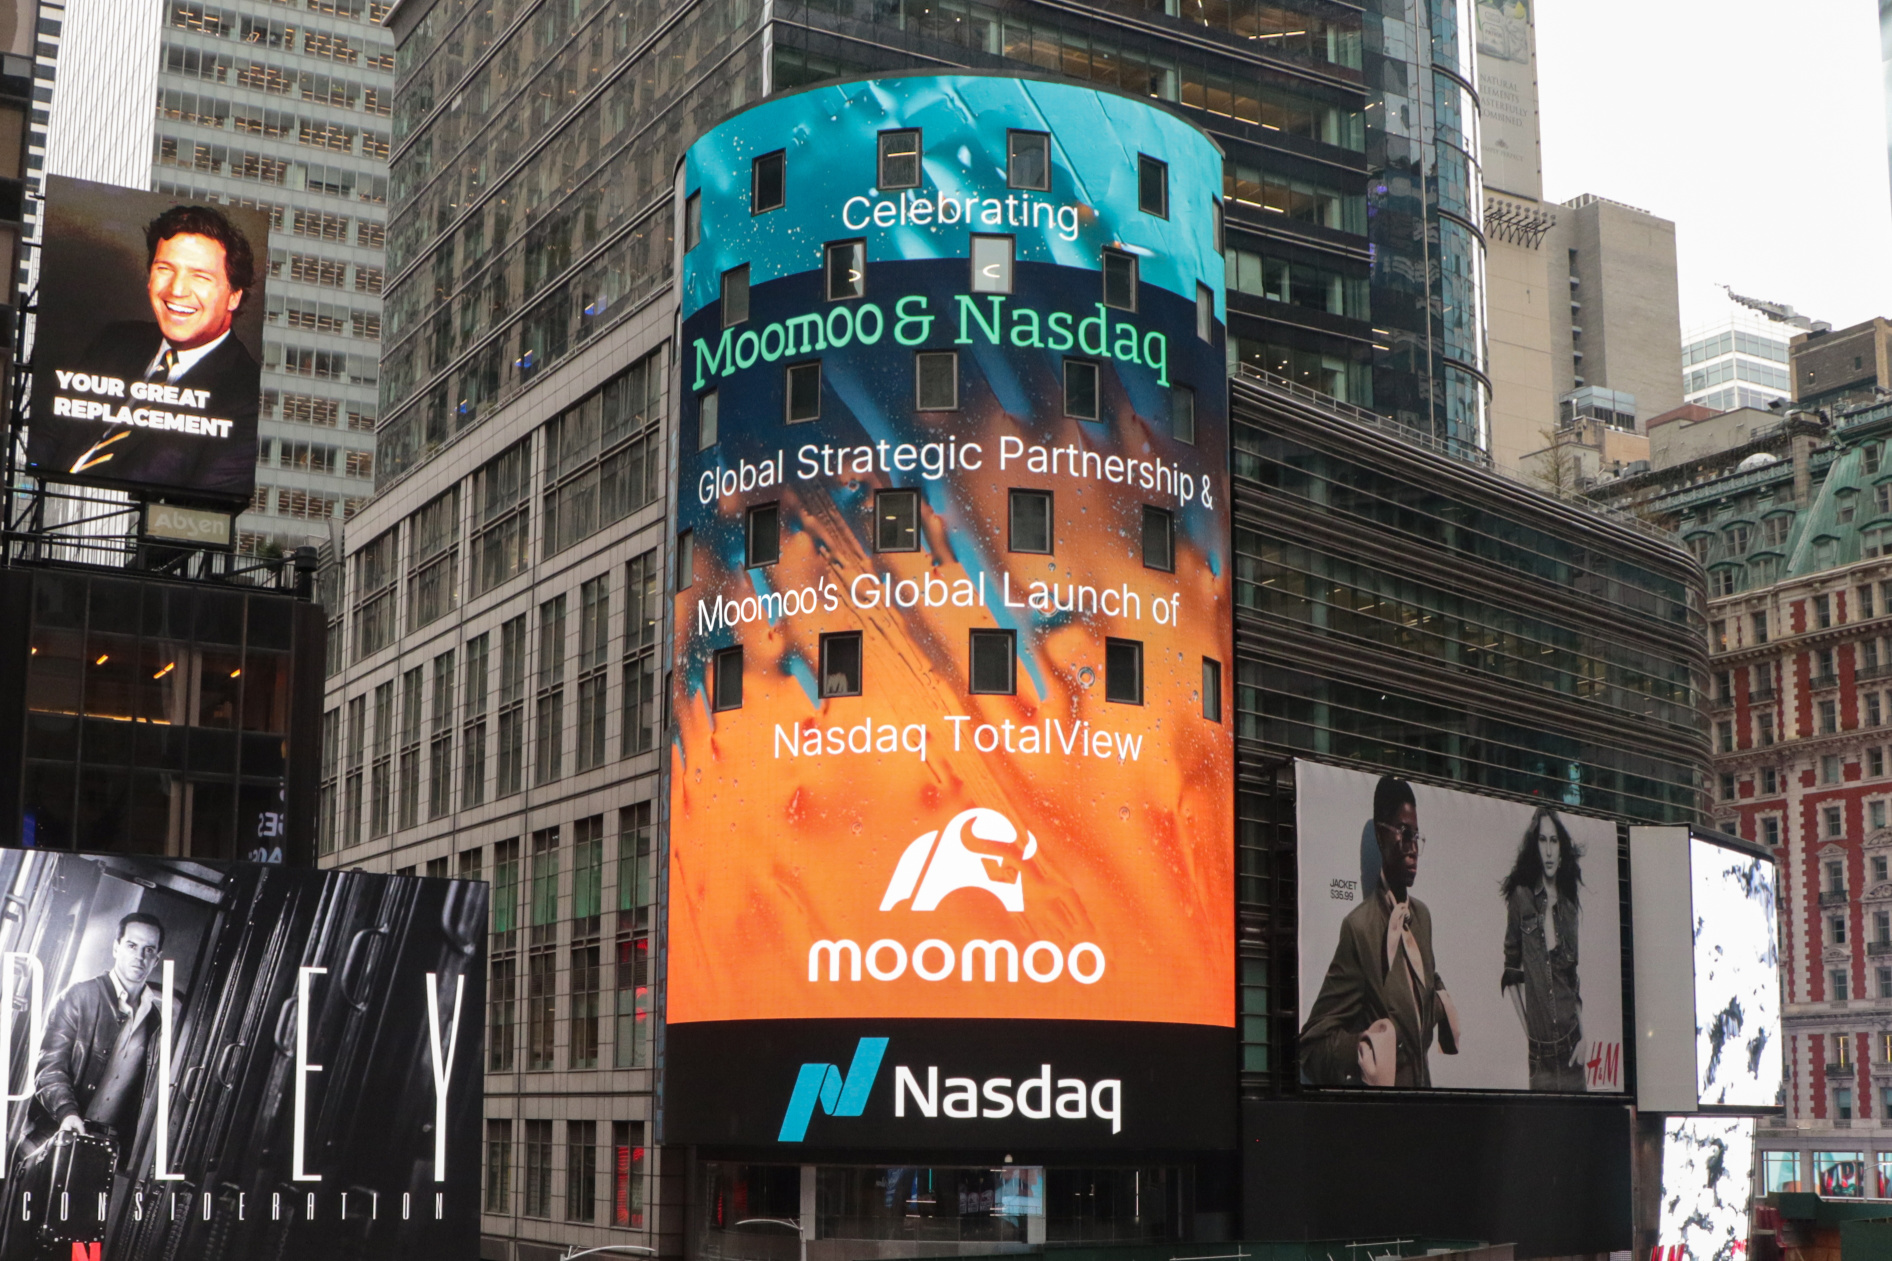 Moomoo 與納斯達克共創六年的全球戰略合作夥伴關係，重申對賦予投資者權力的承諾